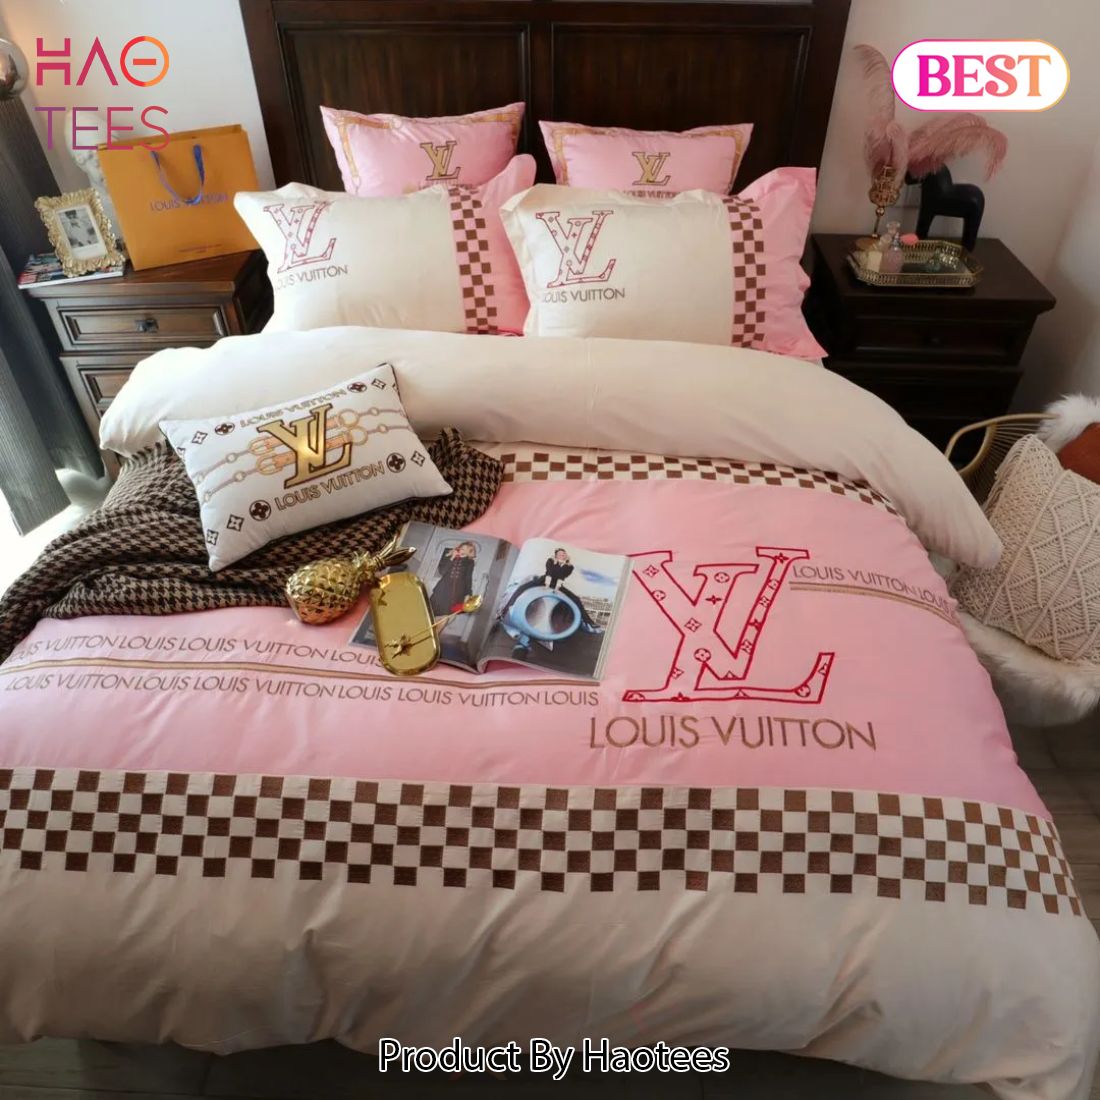 SALE] Louis Vuitton Beige Light Pink Luxury Brand Premium Bedding